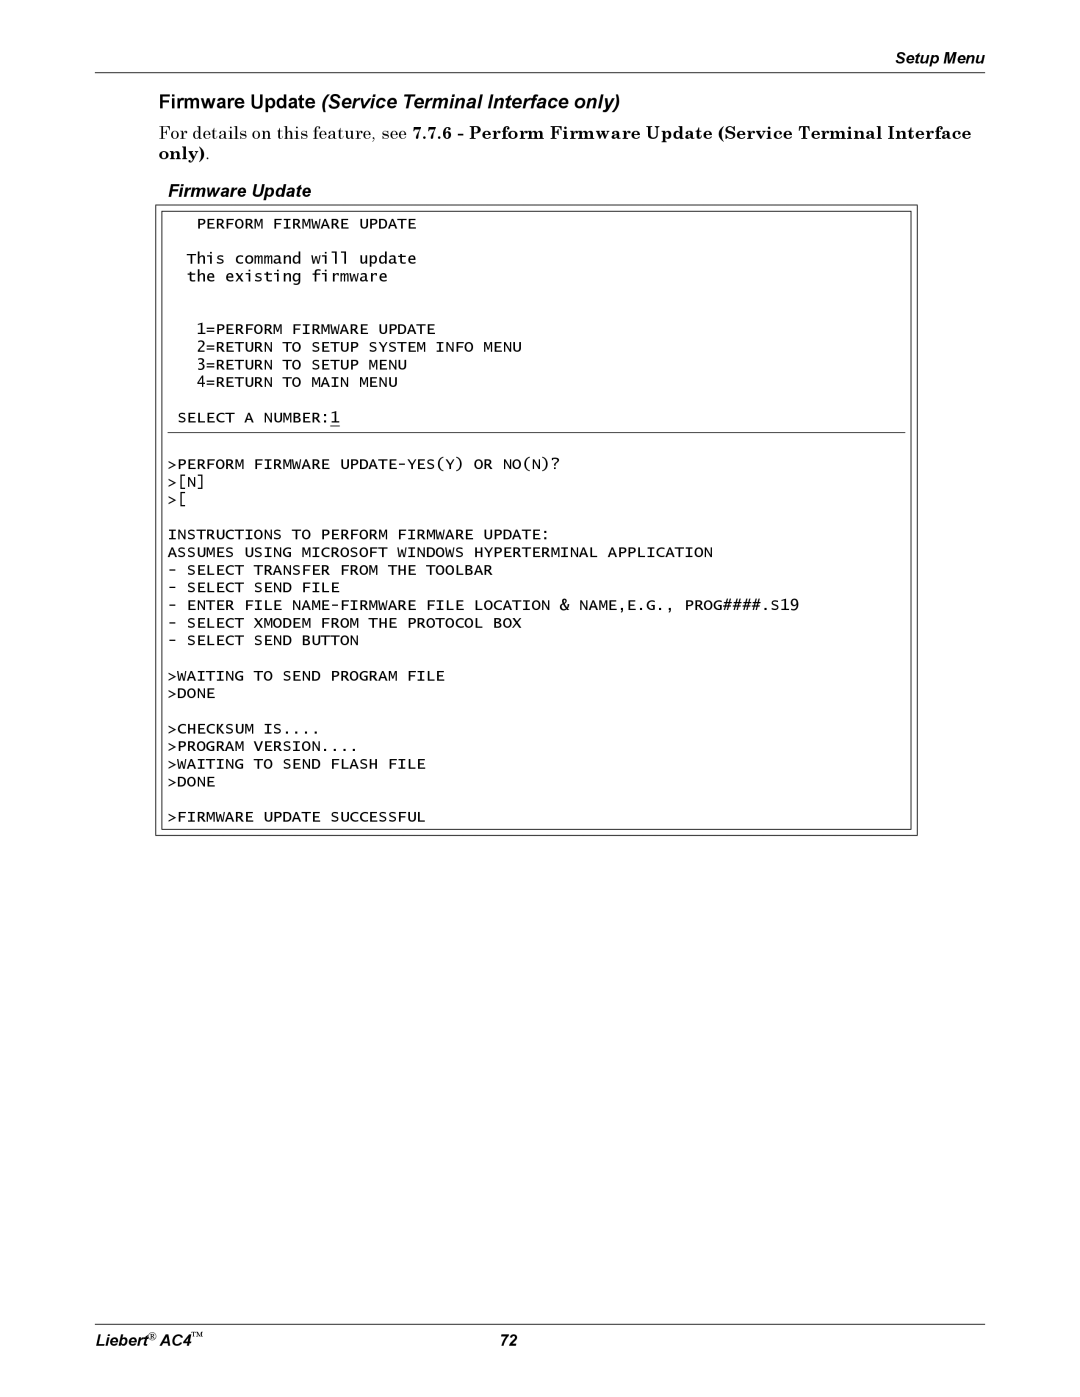 Emerson user manual Firmware Update Service Terminal Interface only, Setup Menu, Liebert AC4 